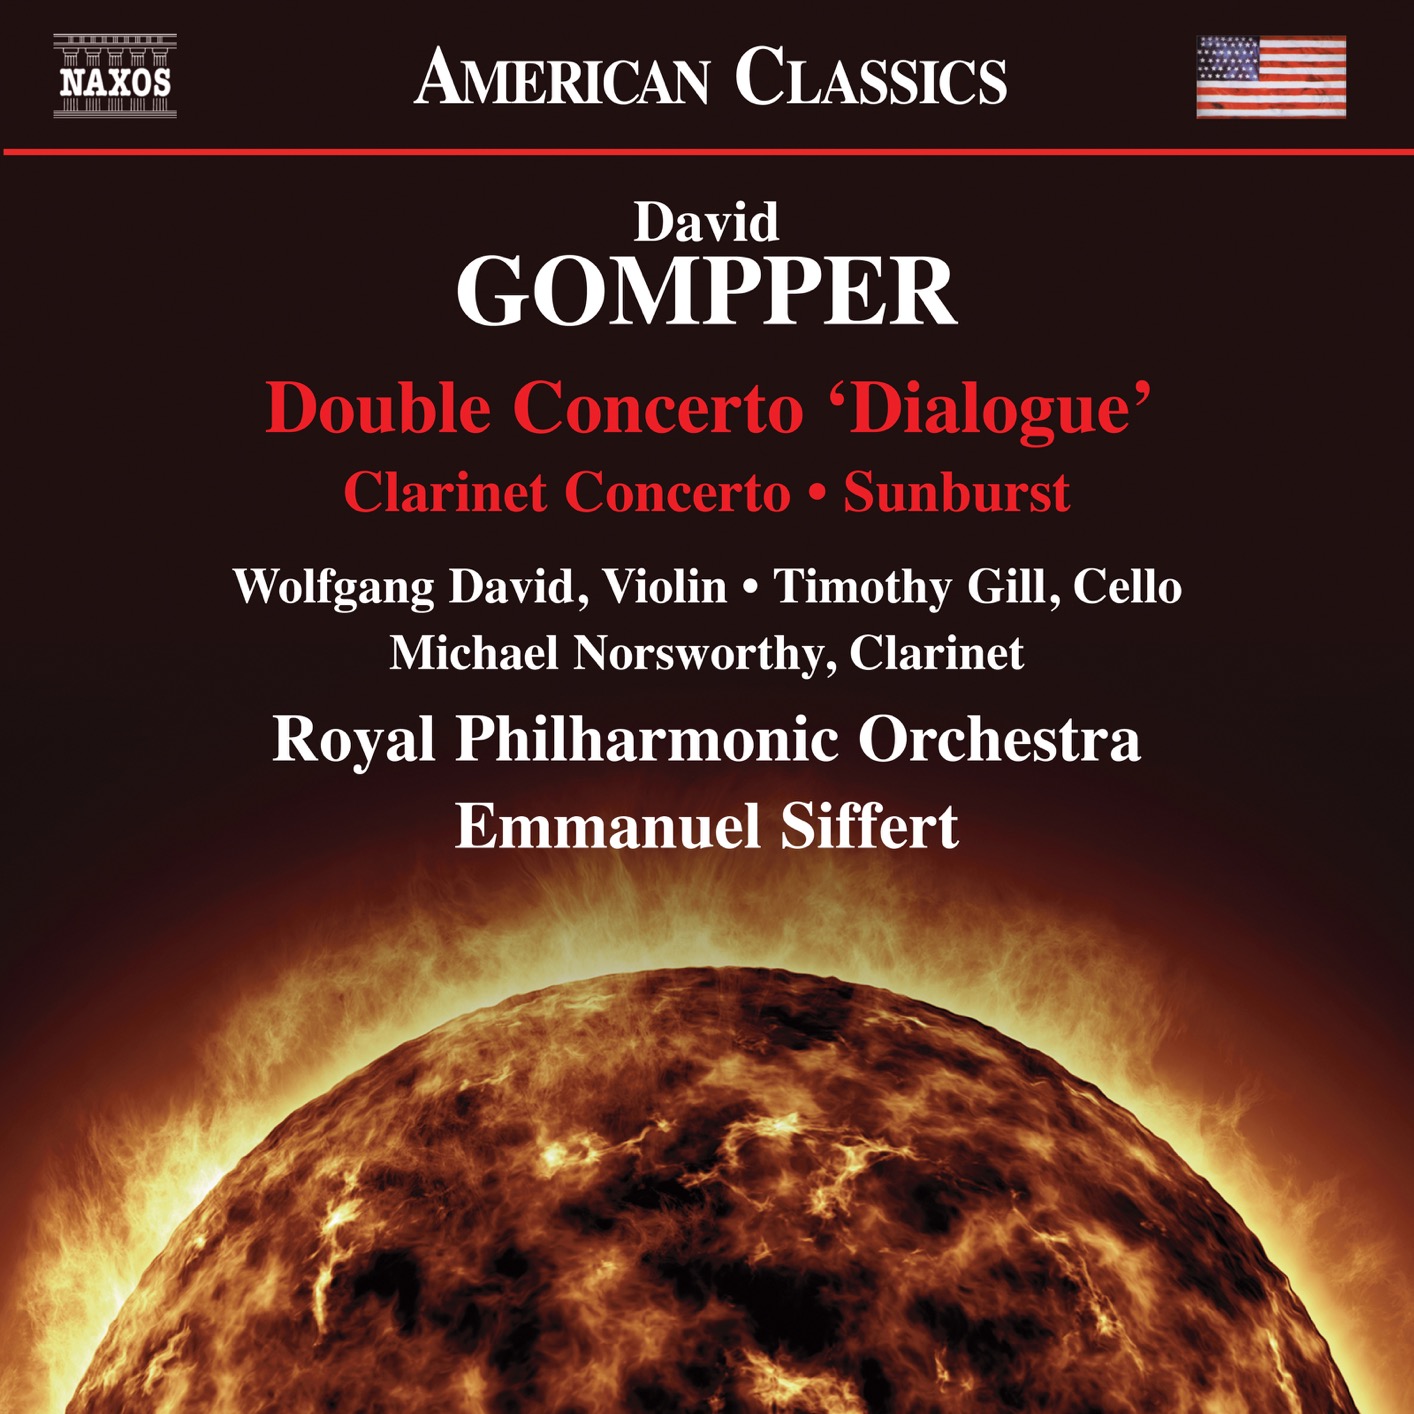 Emmanuel Siffert, Royal Philharmonic Orchestra - David Gompper: Double Concerto "Dialogue", Clarinet Concerto & Sunburst (2019) [FLAC 24bit/96kHz]